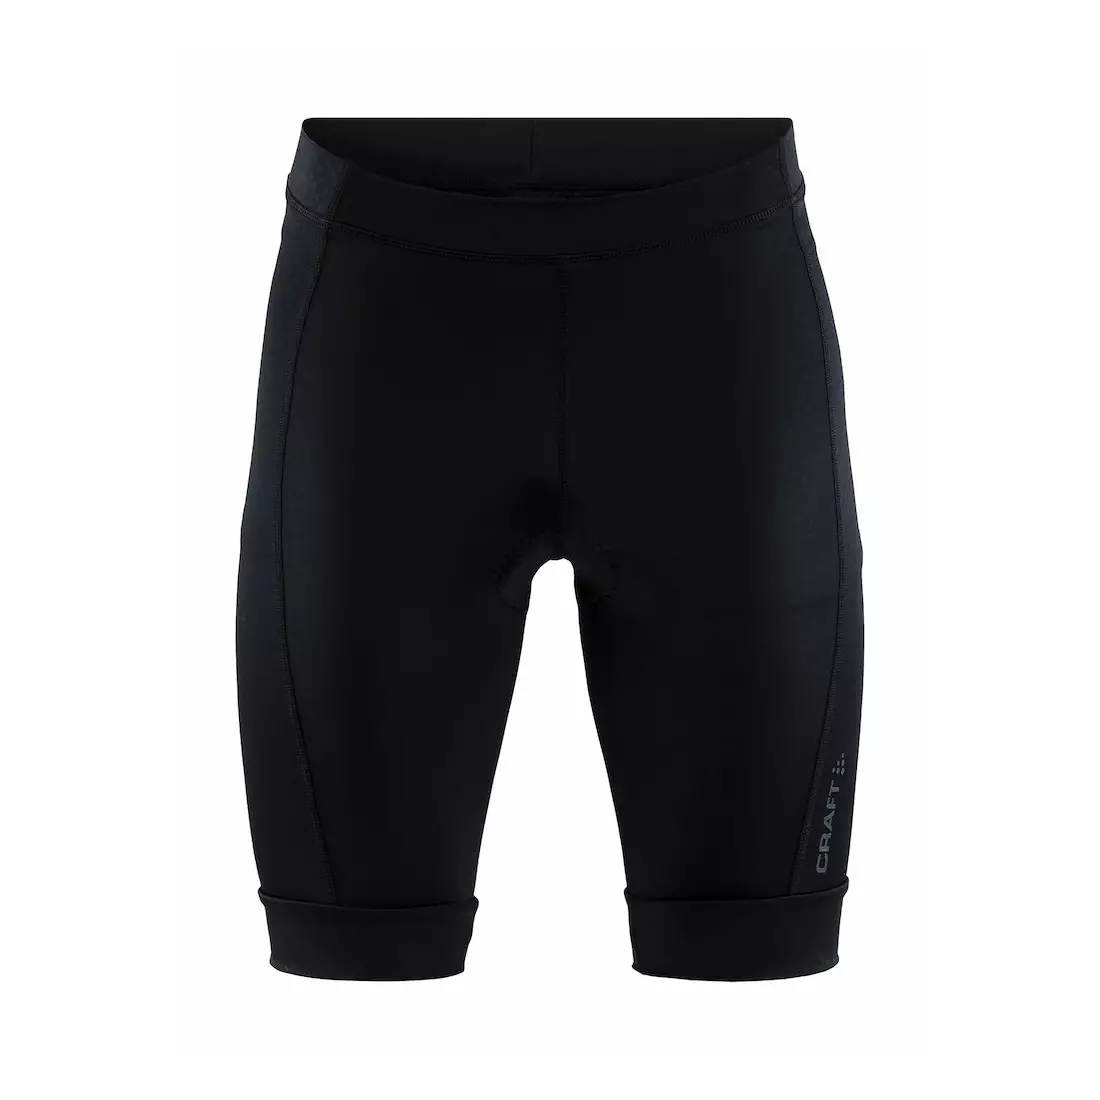 Pantaloni scurți de ciclism pentru bărbați CRAFT RISE, negri 1906100-999999